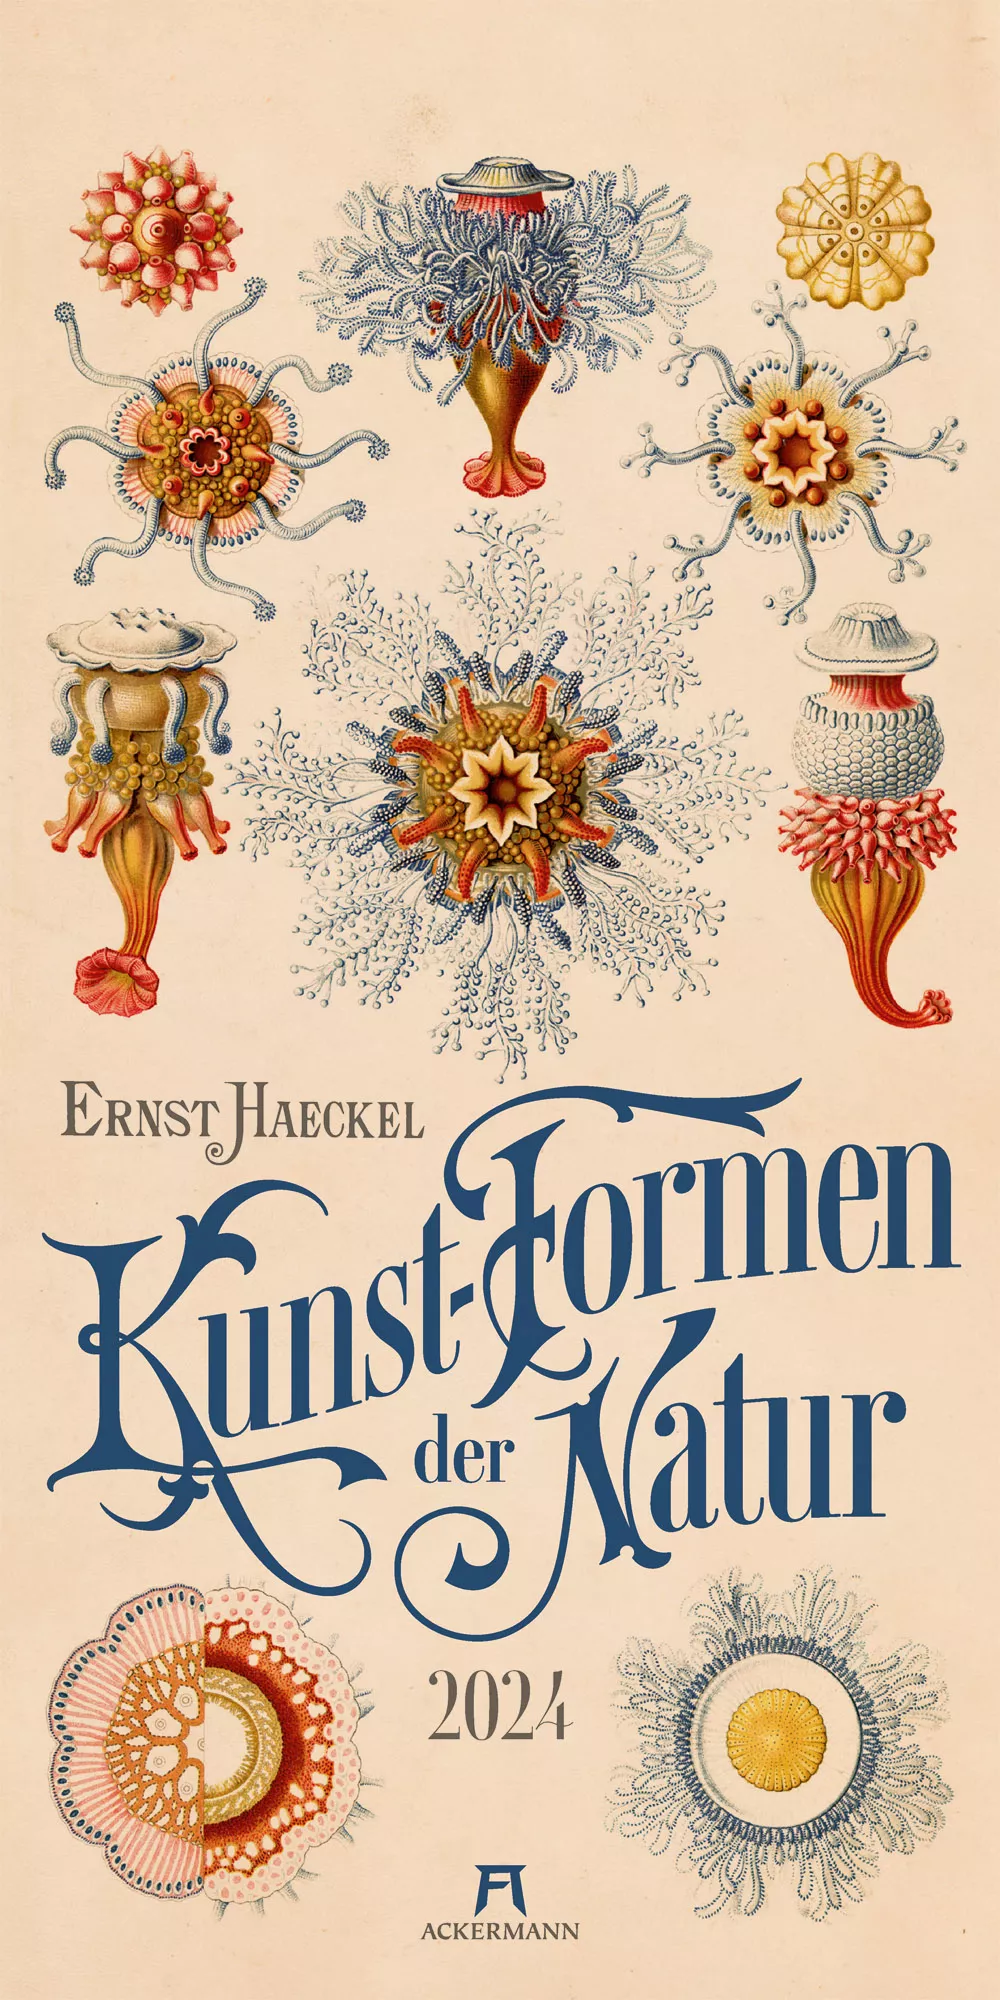 Ackermann Kalender Kunst-Formen der Natur 2024 - Titelblatt